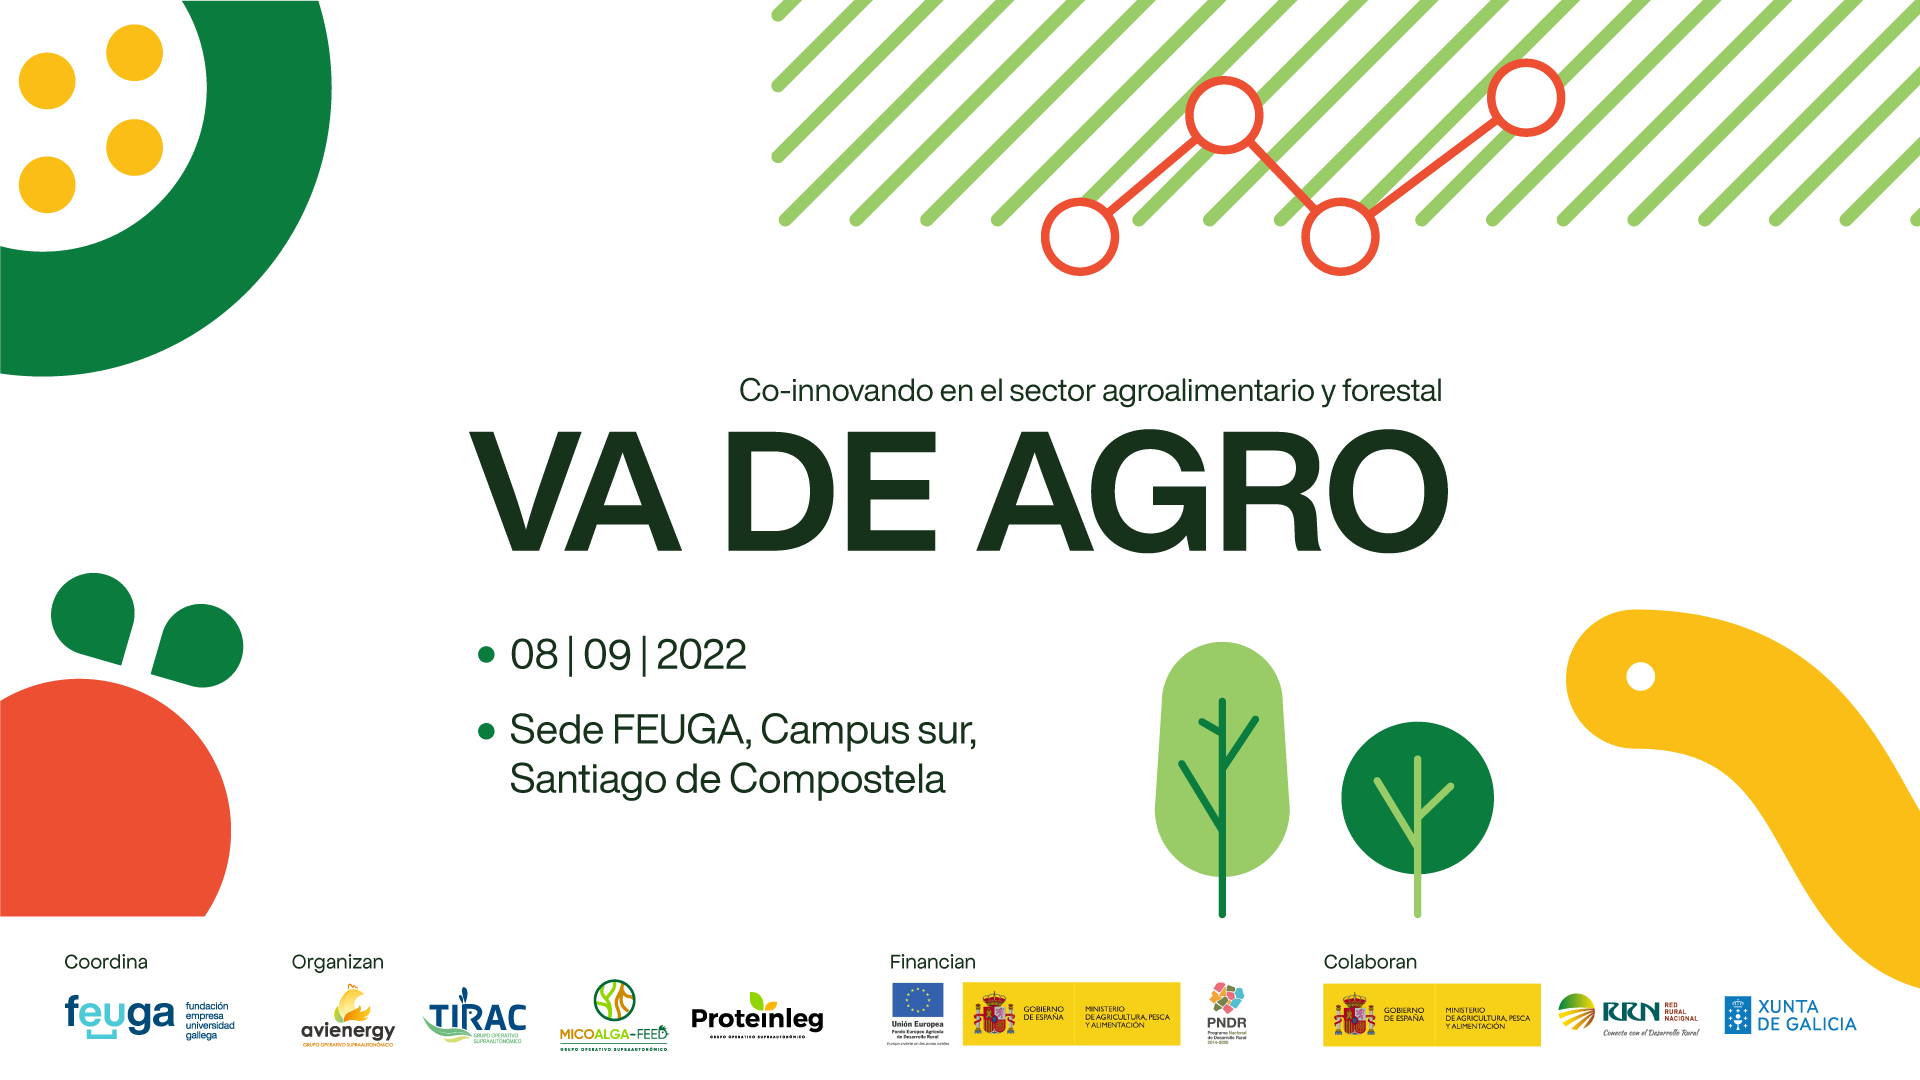 Co-innovando en el sector agroalimentario y forestal VA DE AGRO